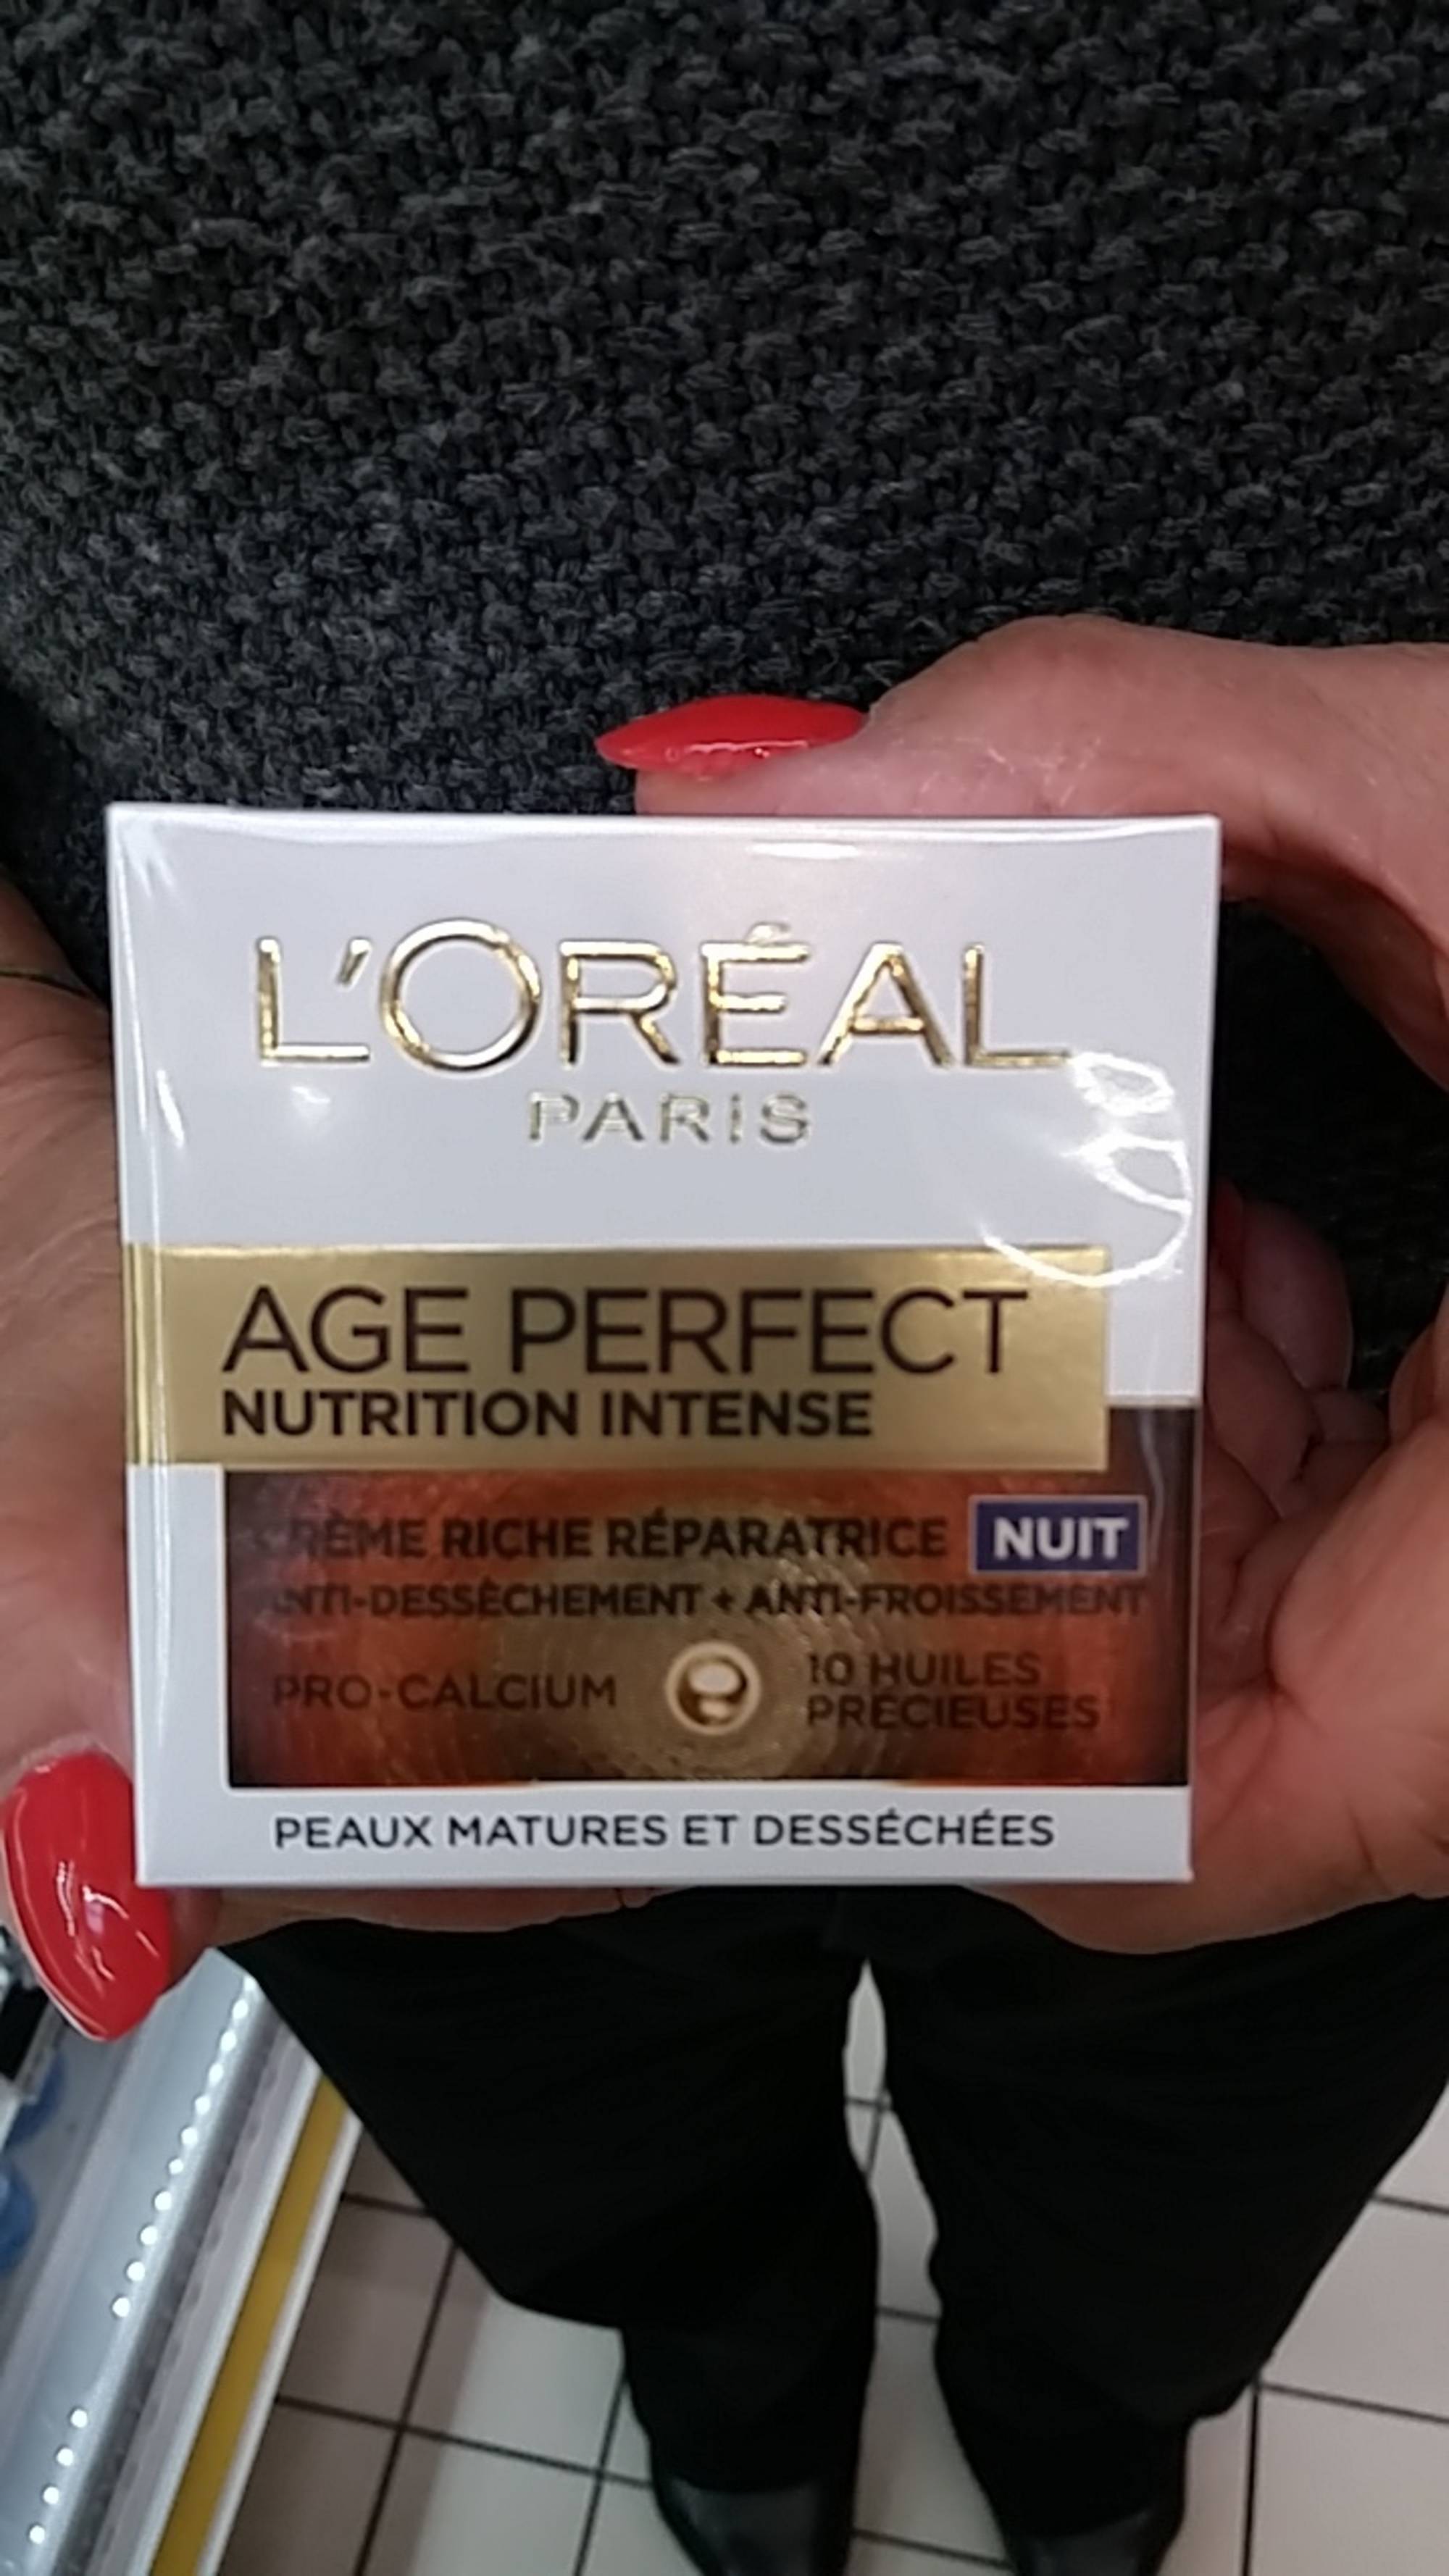 L'ORÉAL - Age perfect - Nutrition intense nuit